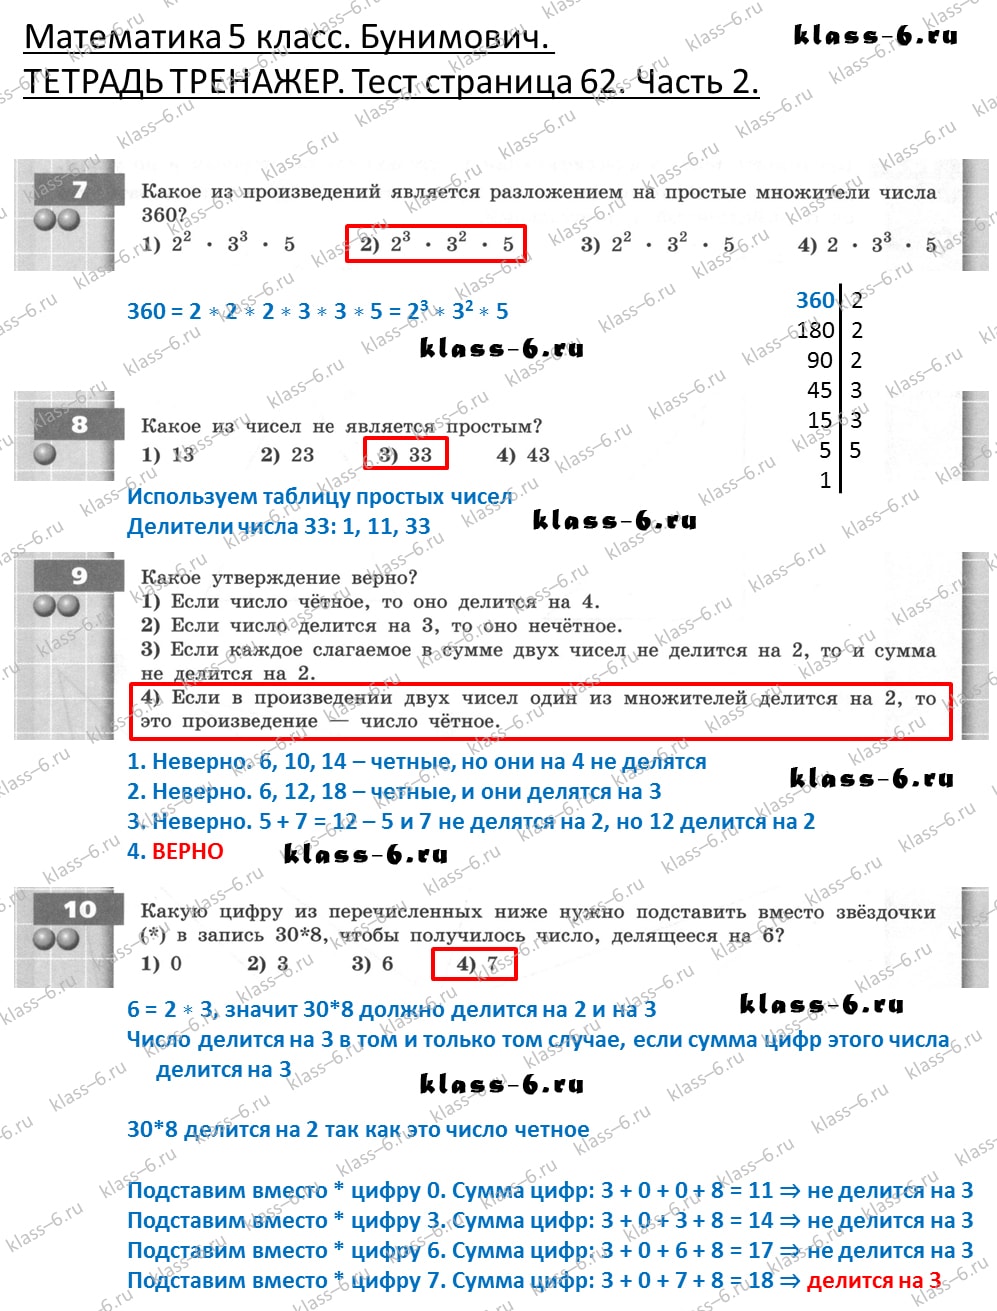 решебник и гдз по математике тетрадь тренажер Бунимович 5 класс тесты страница 62 (2)